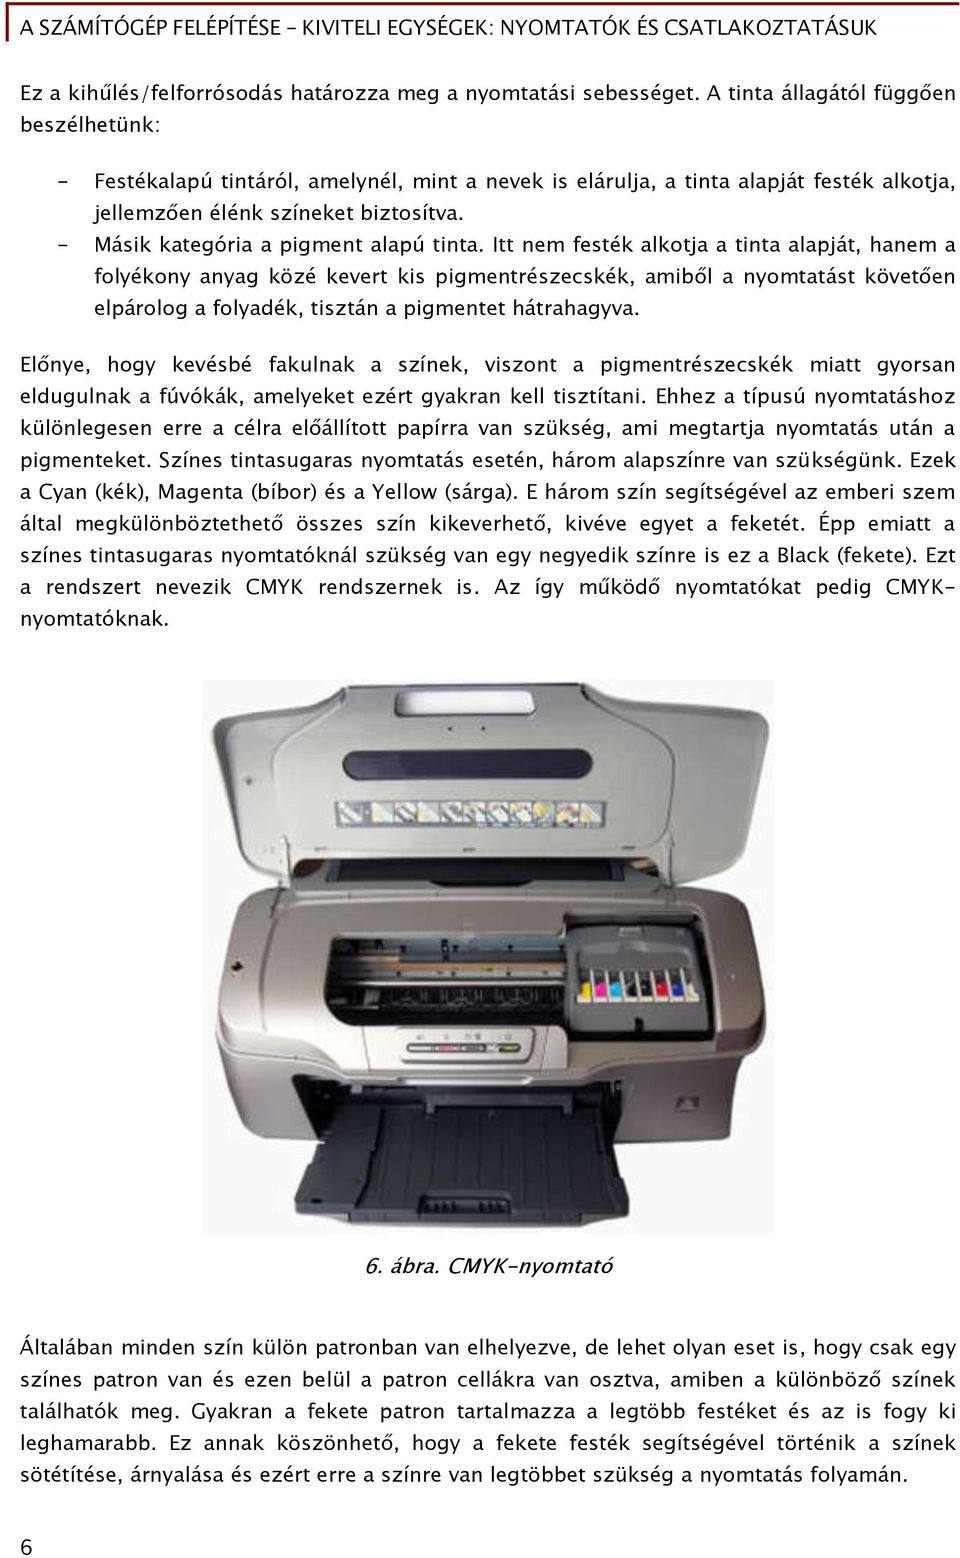 A számítóőép Őelépítése Kiviteli eőyséőek: nyomtatók és csatlakoztatásuk -  PDF Ingyenes letöltés